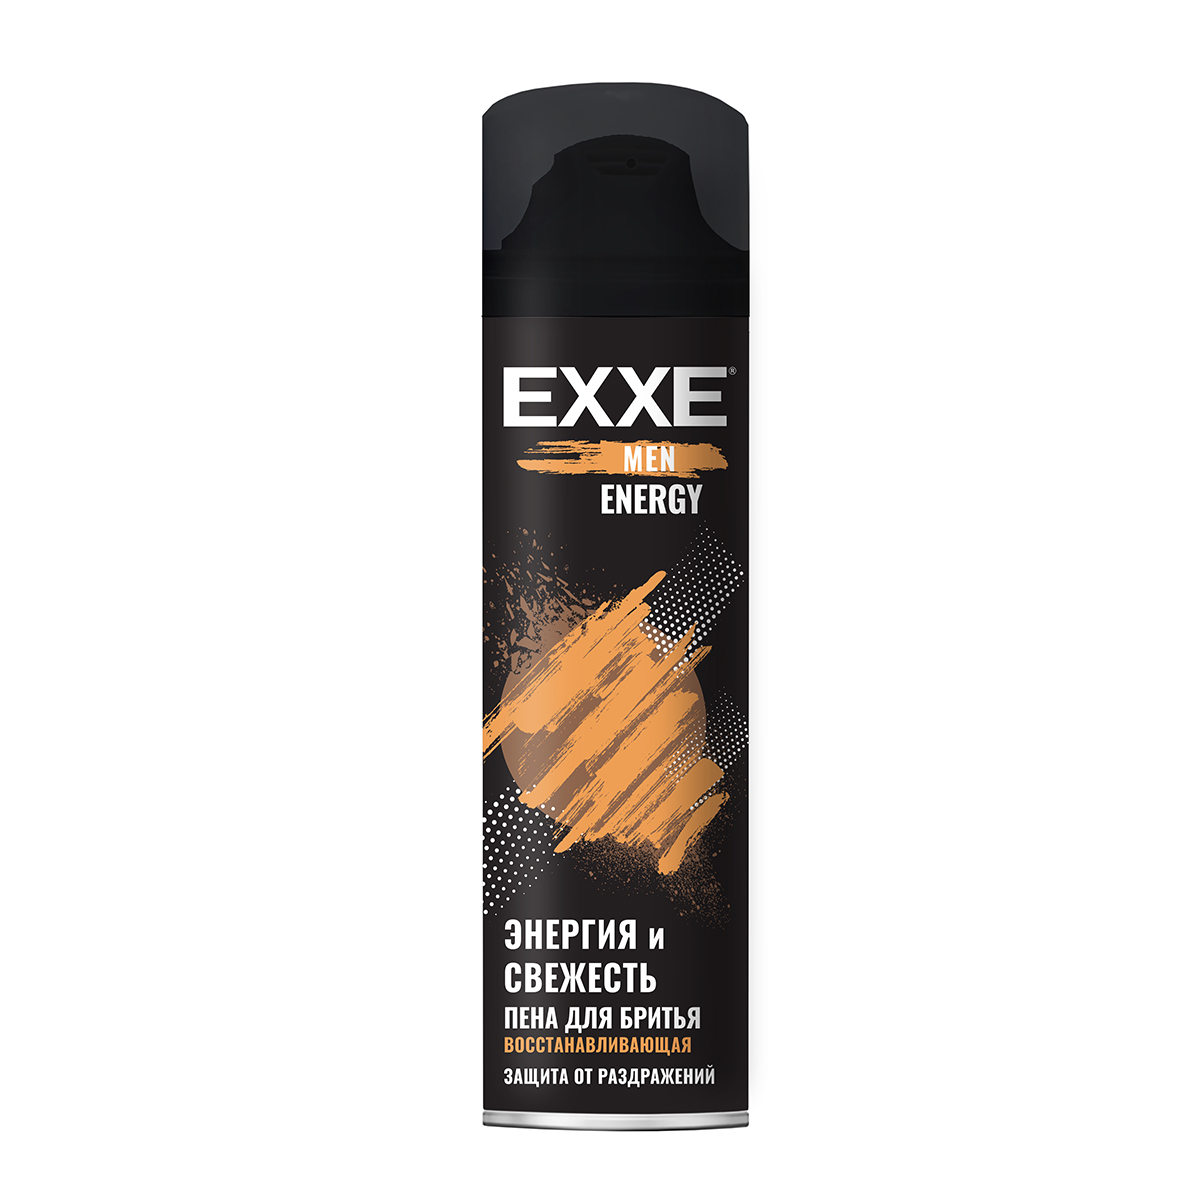 Гель для бритья EXXE Men Energy 200 мл - фото 1